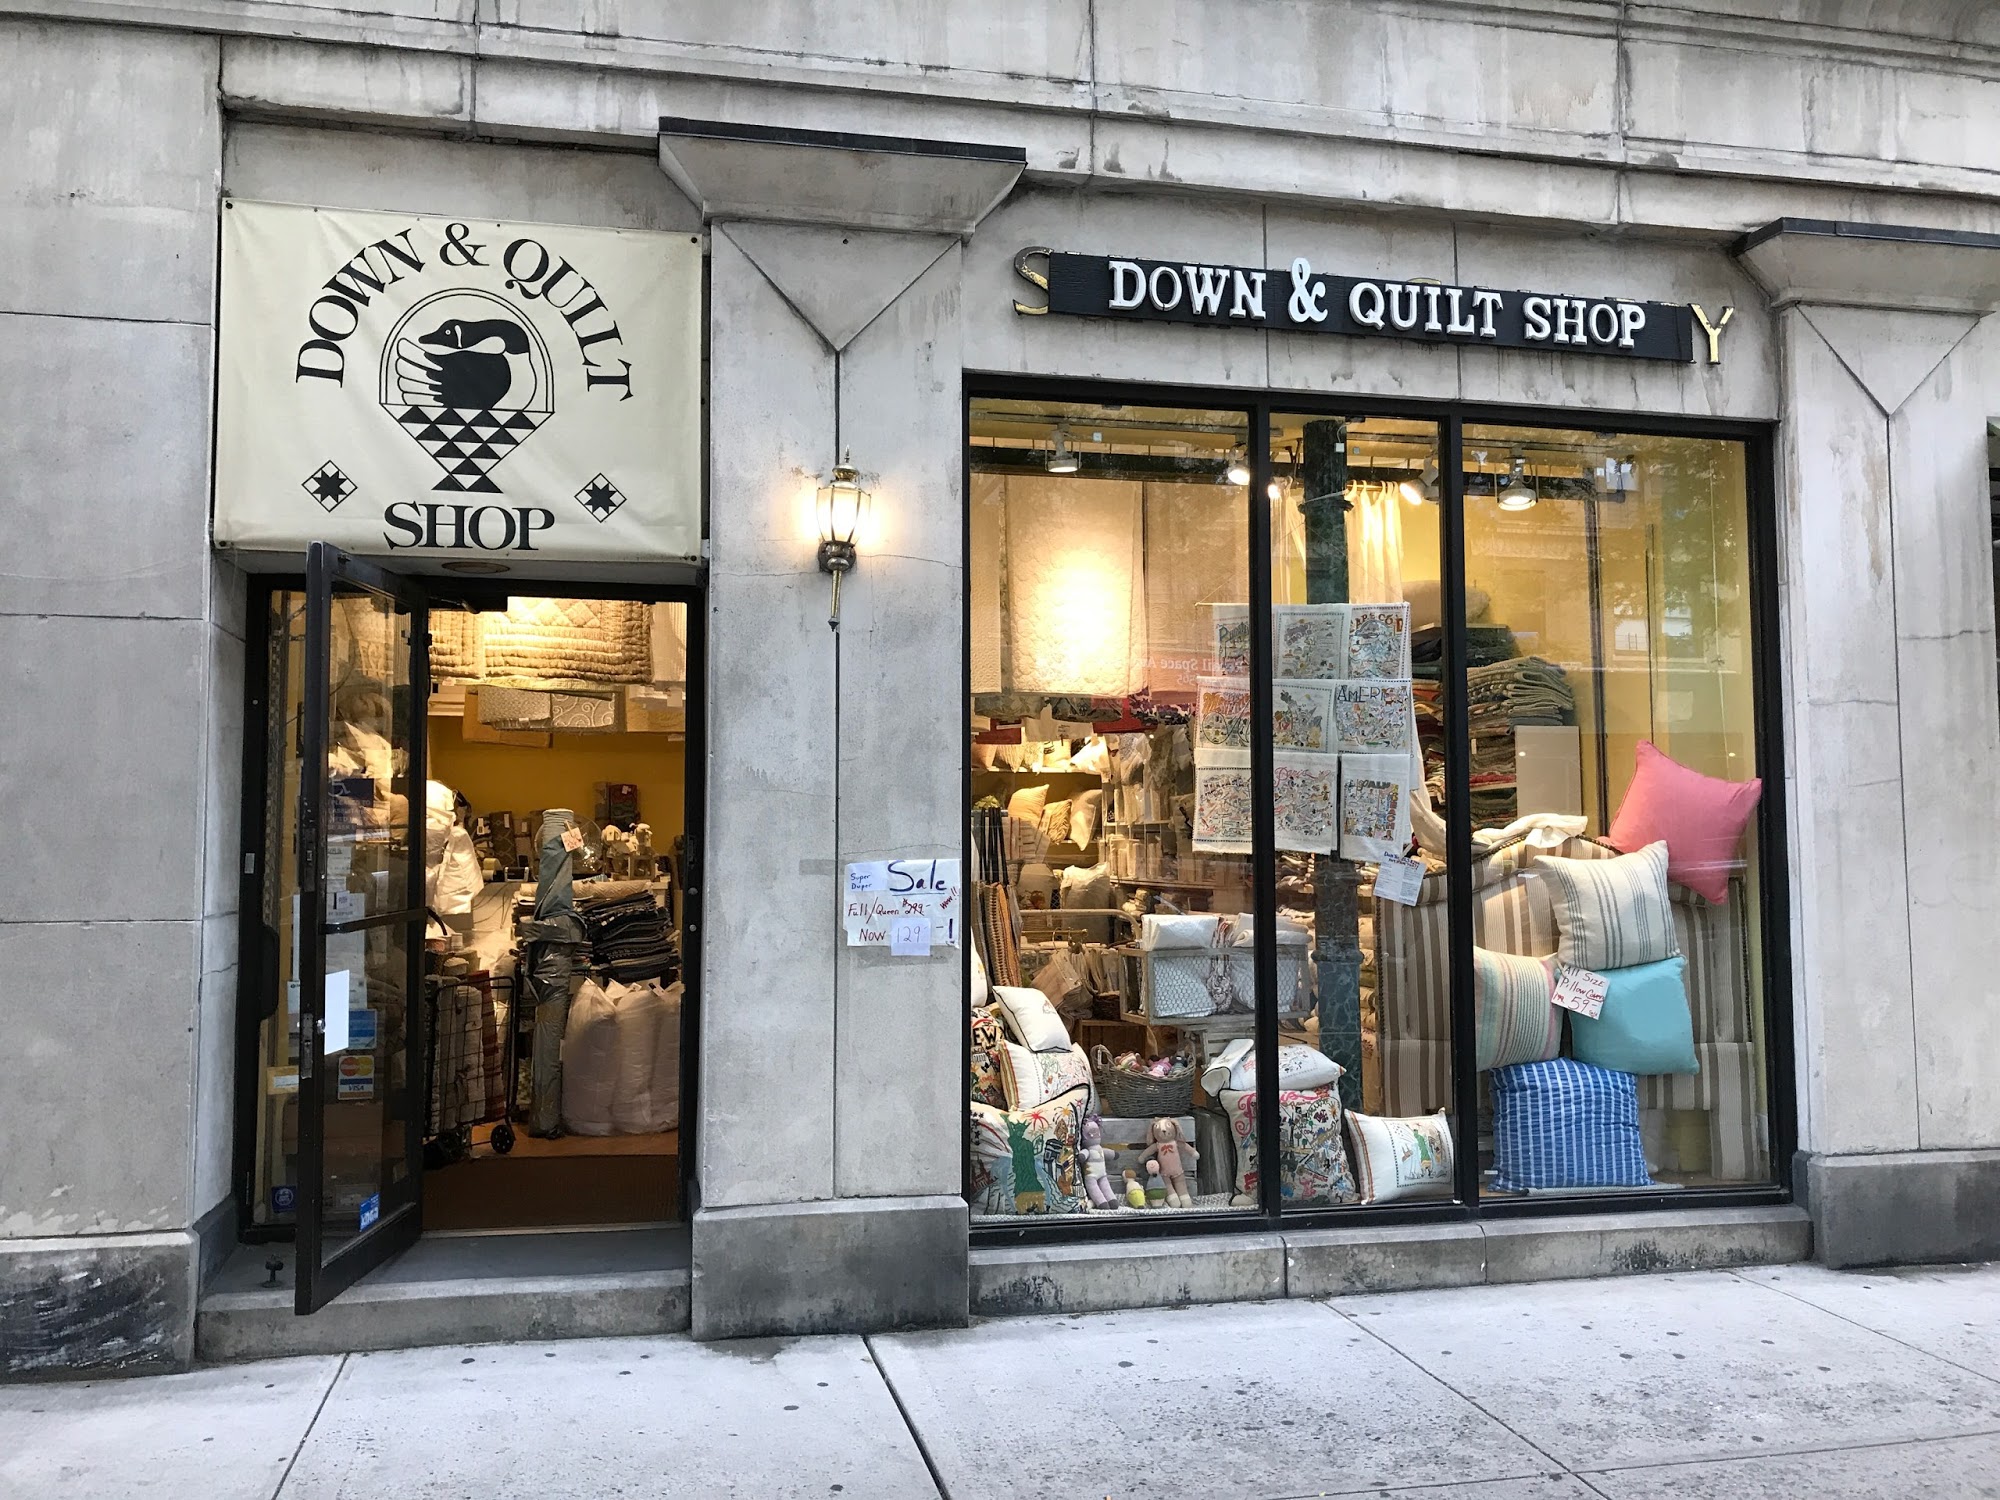 Down & Quilt Shop